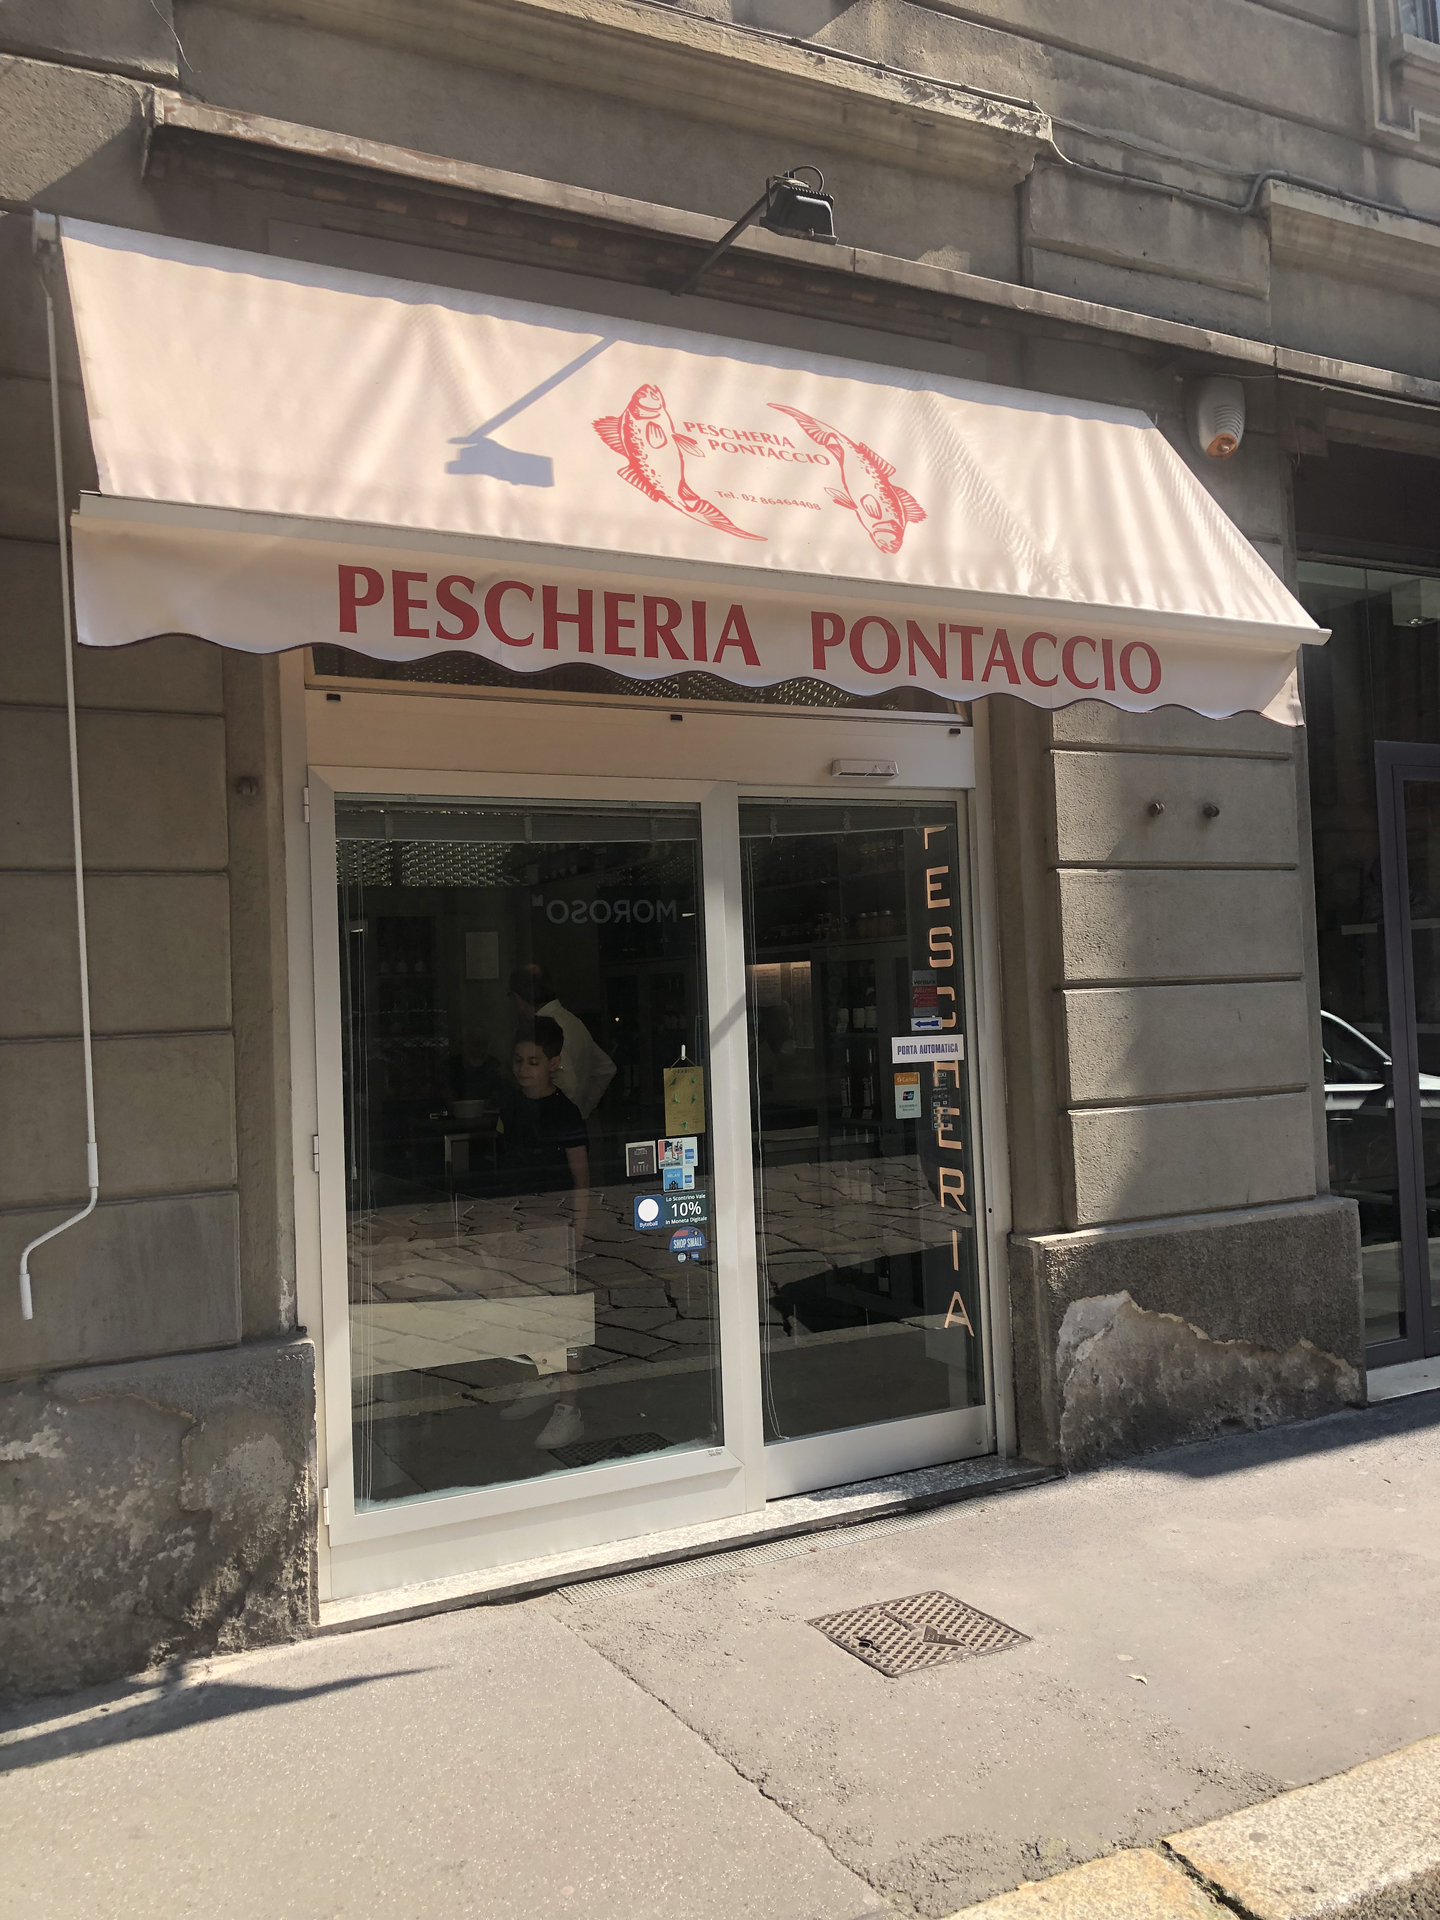 Pescheria-Pontaccio-Milano_www.milanomia.com (5)